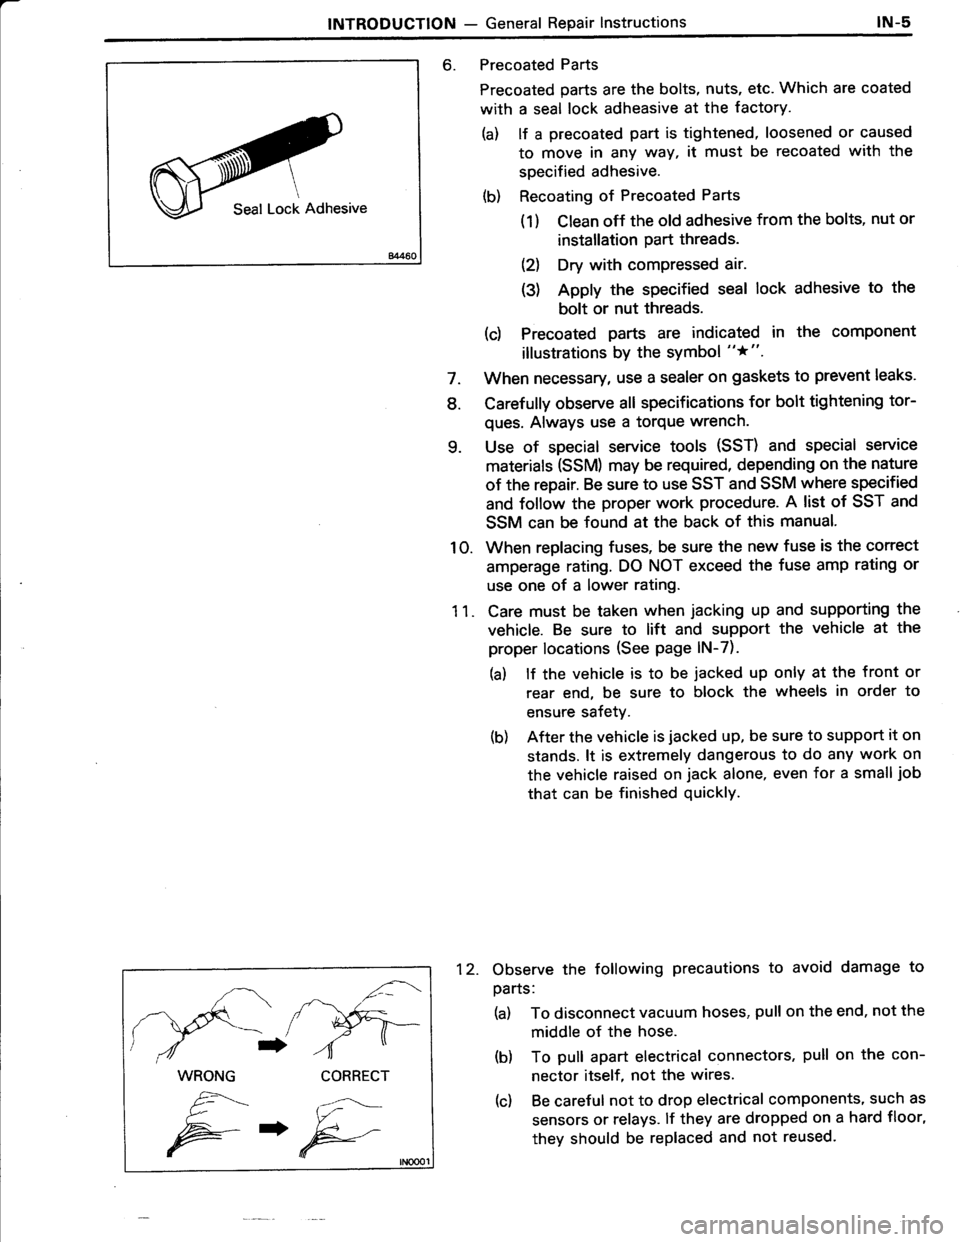 TOYOTA TERCEL 1985  Repair Manual 